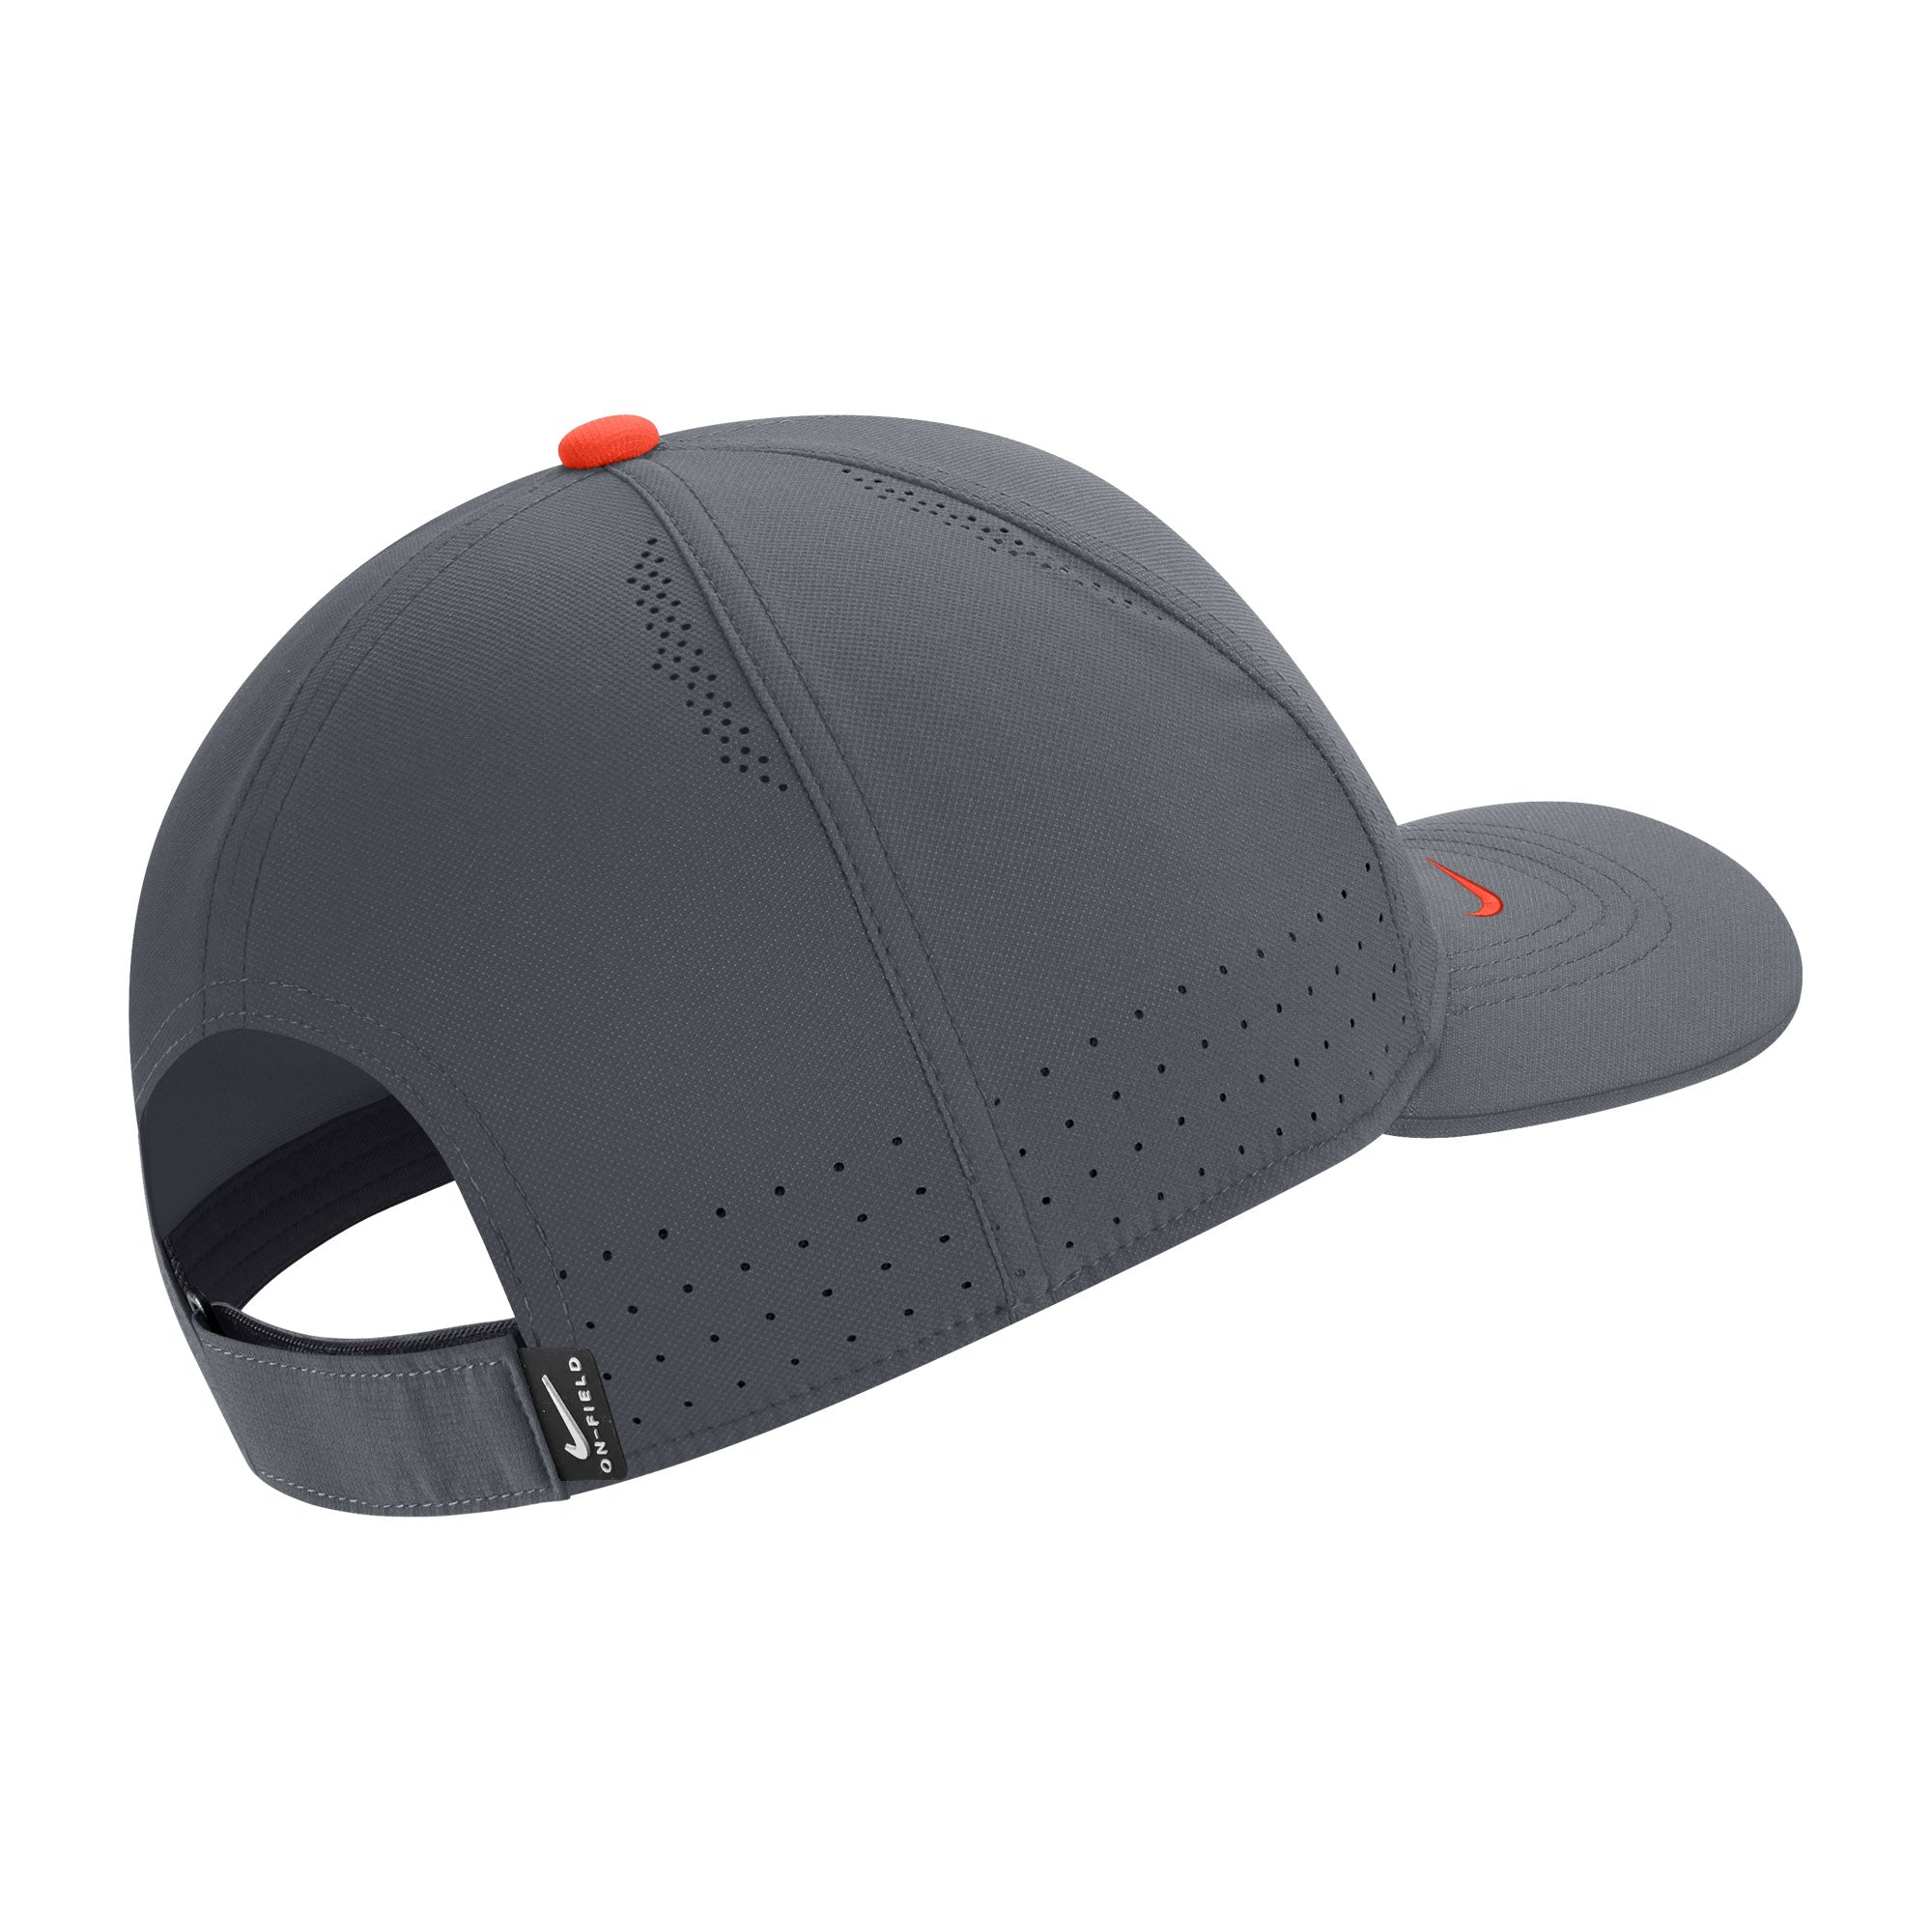 Nike Sideline L91 Adjustable Cap